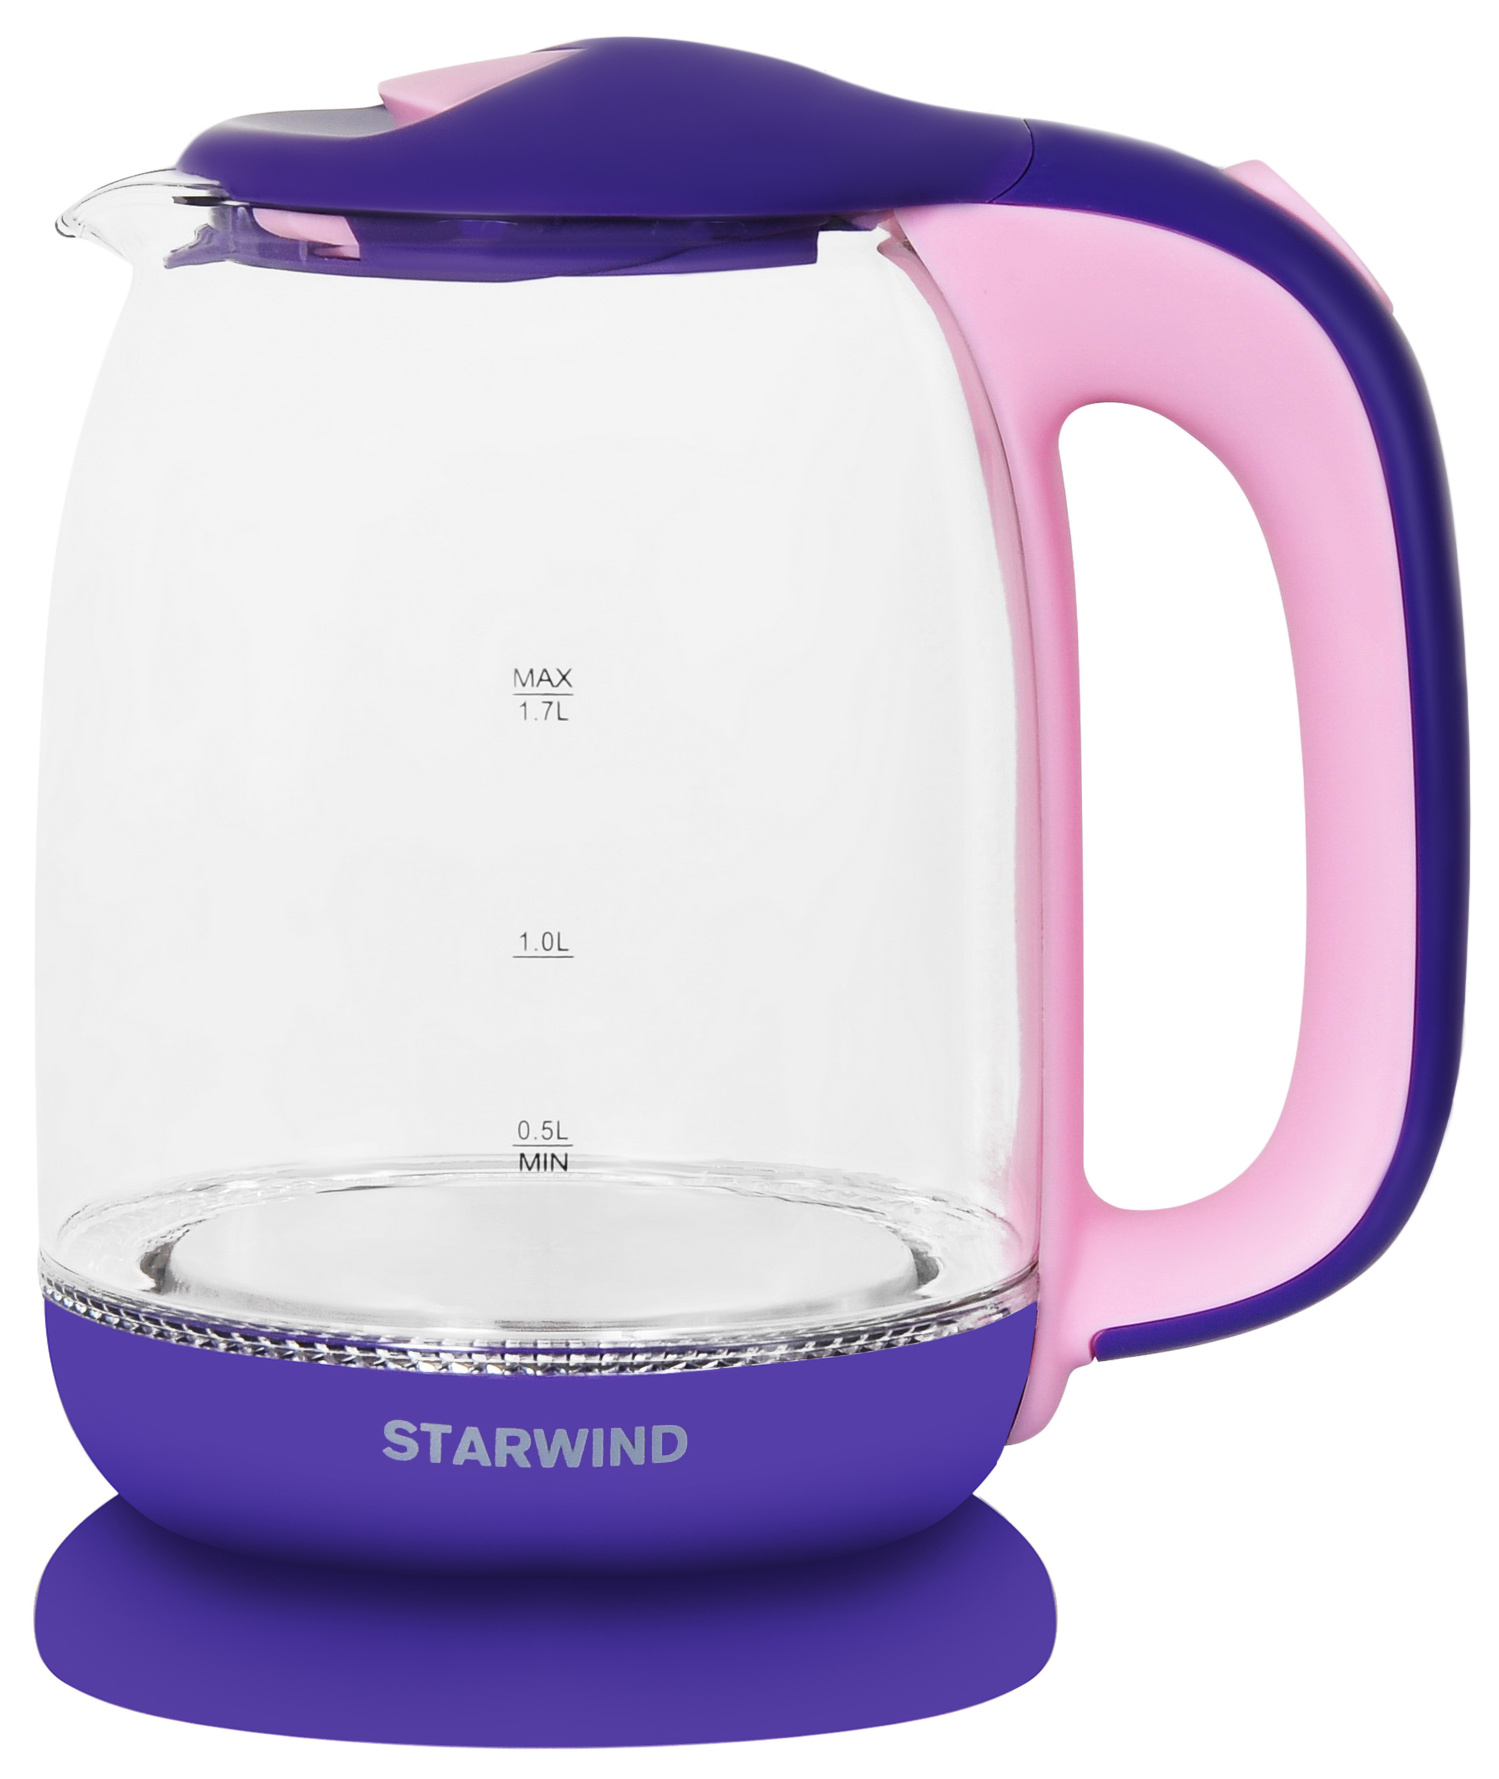 Чайник электрический STARWIND SKG1513 1.7 л фиолетовый, розовый, прозрачный мягкий пол пазл принцесса 46x46 см фиолетовый розовый